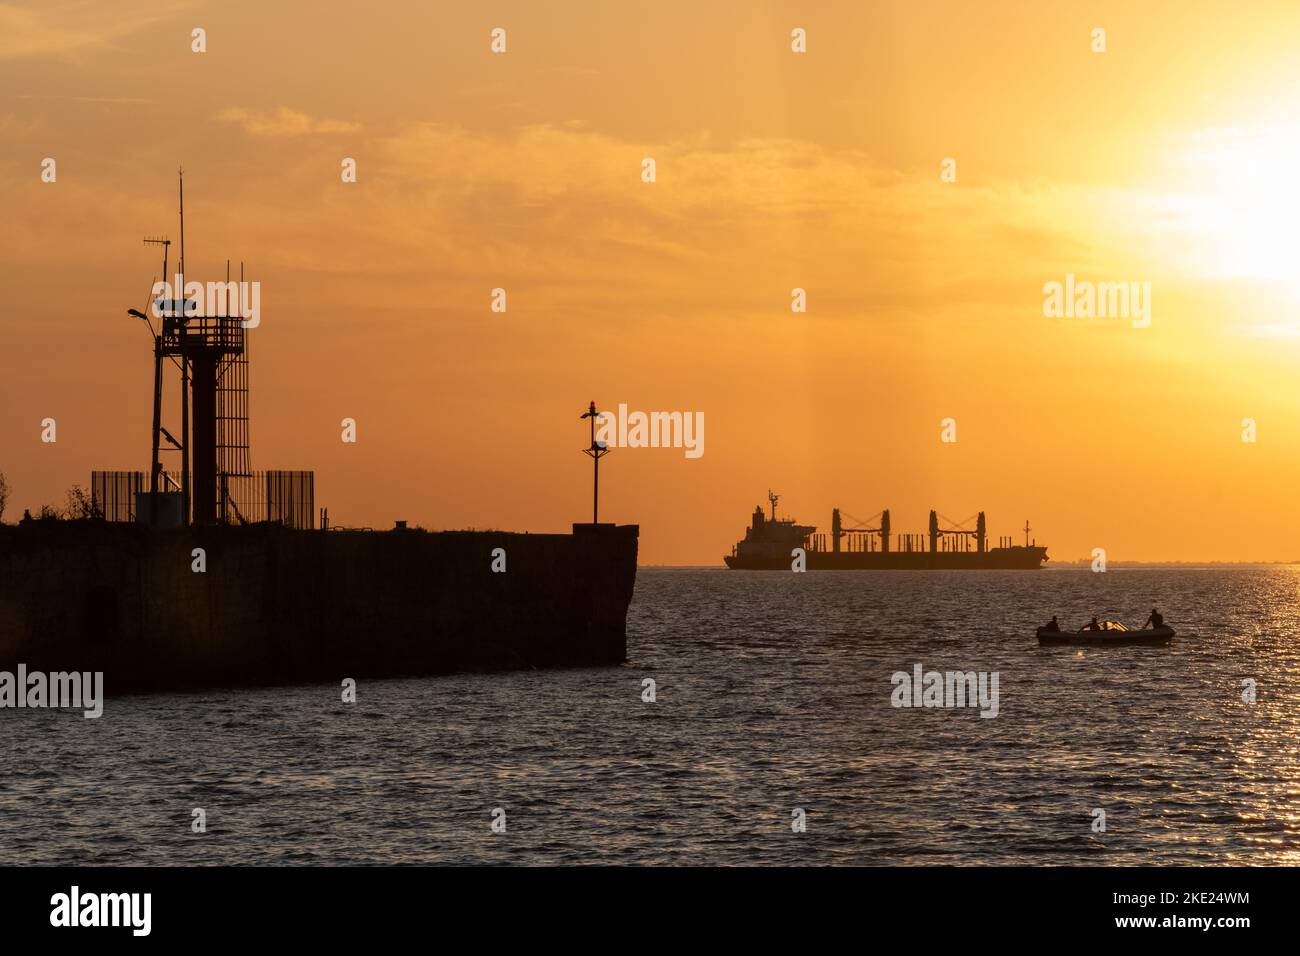 Ein großes Frachtschiff, ein kleines Boot und eine alte Anlegestelle sind am Uruguay River, Conchillas, Uruguay zu sehen Stockfoto